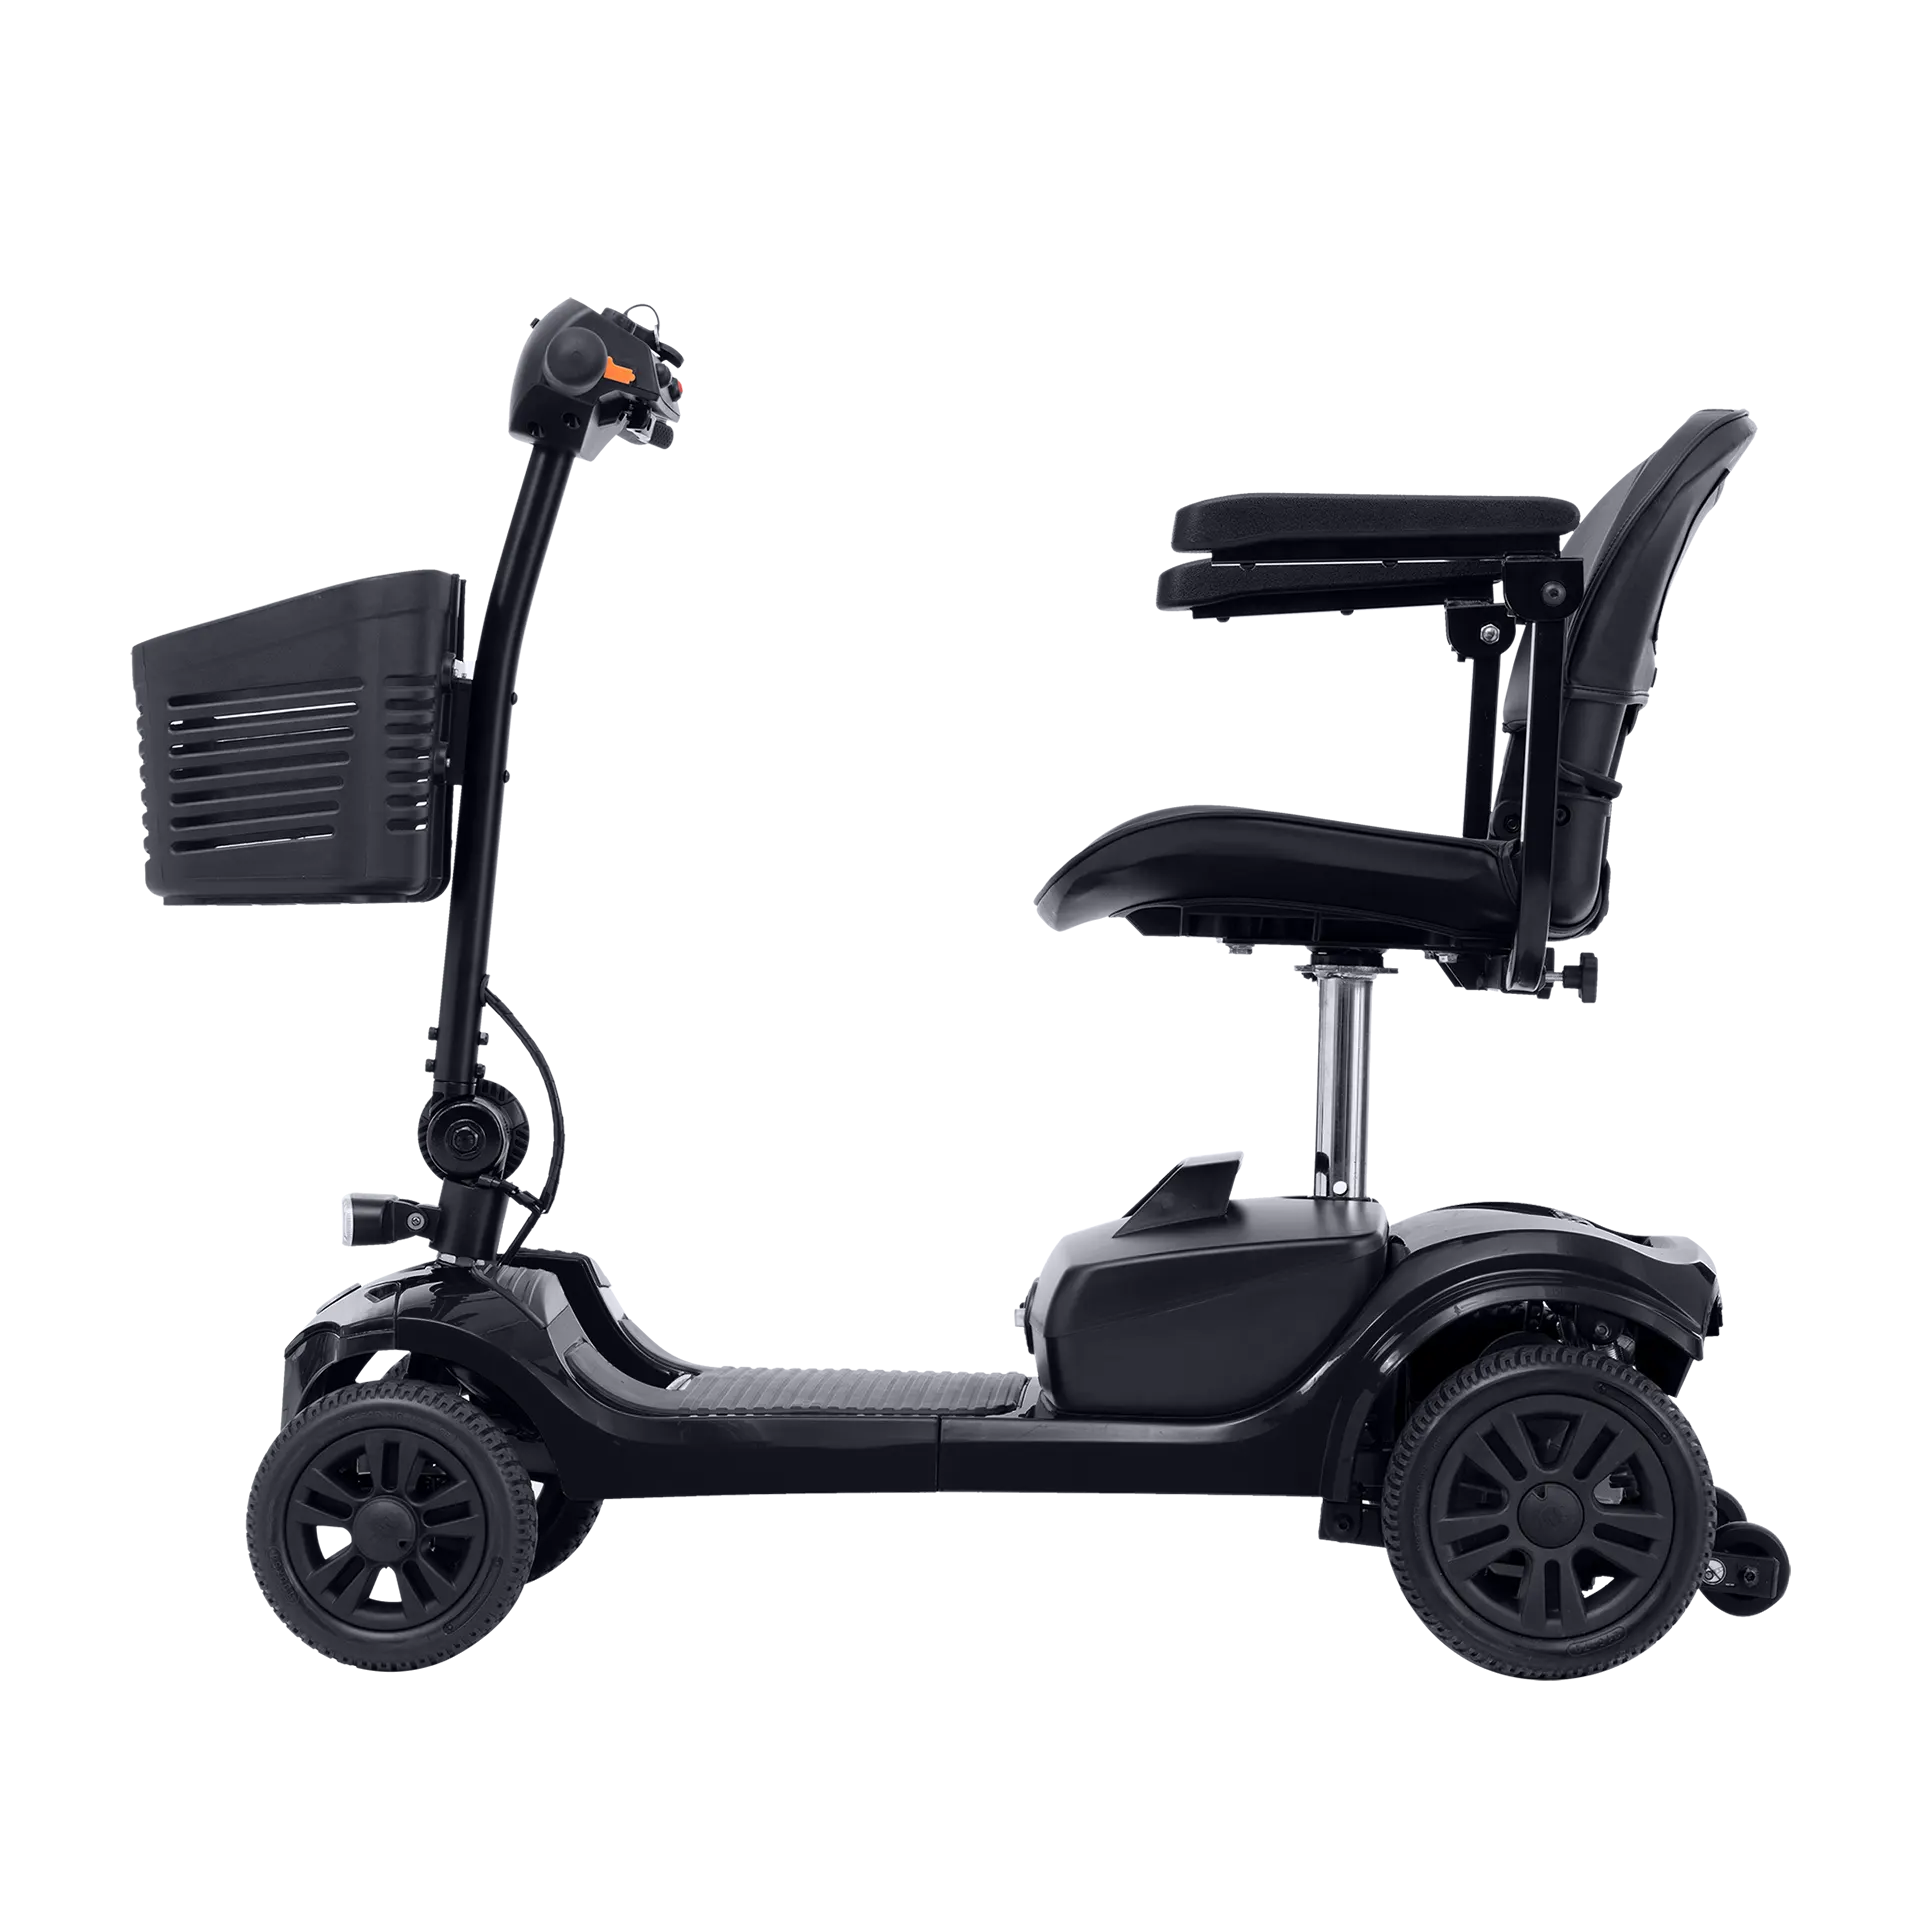 Scooter Eléctrico para Movilidad TheraRover Plus